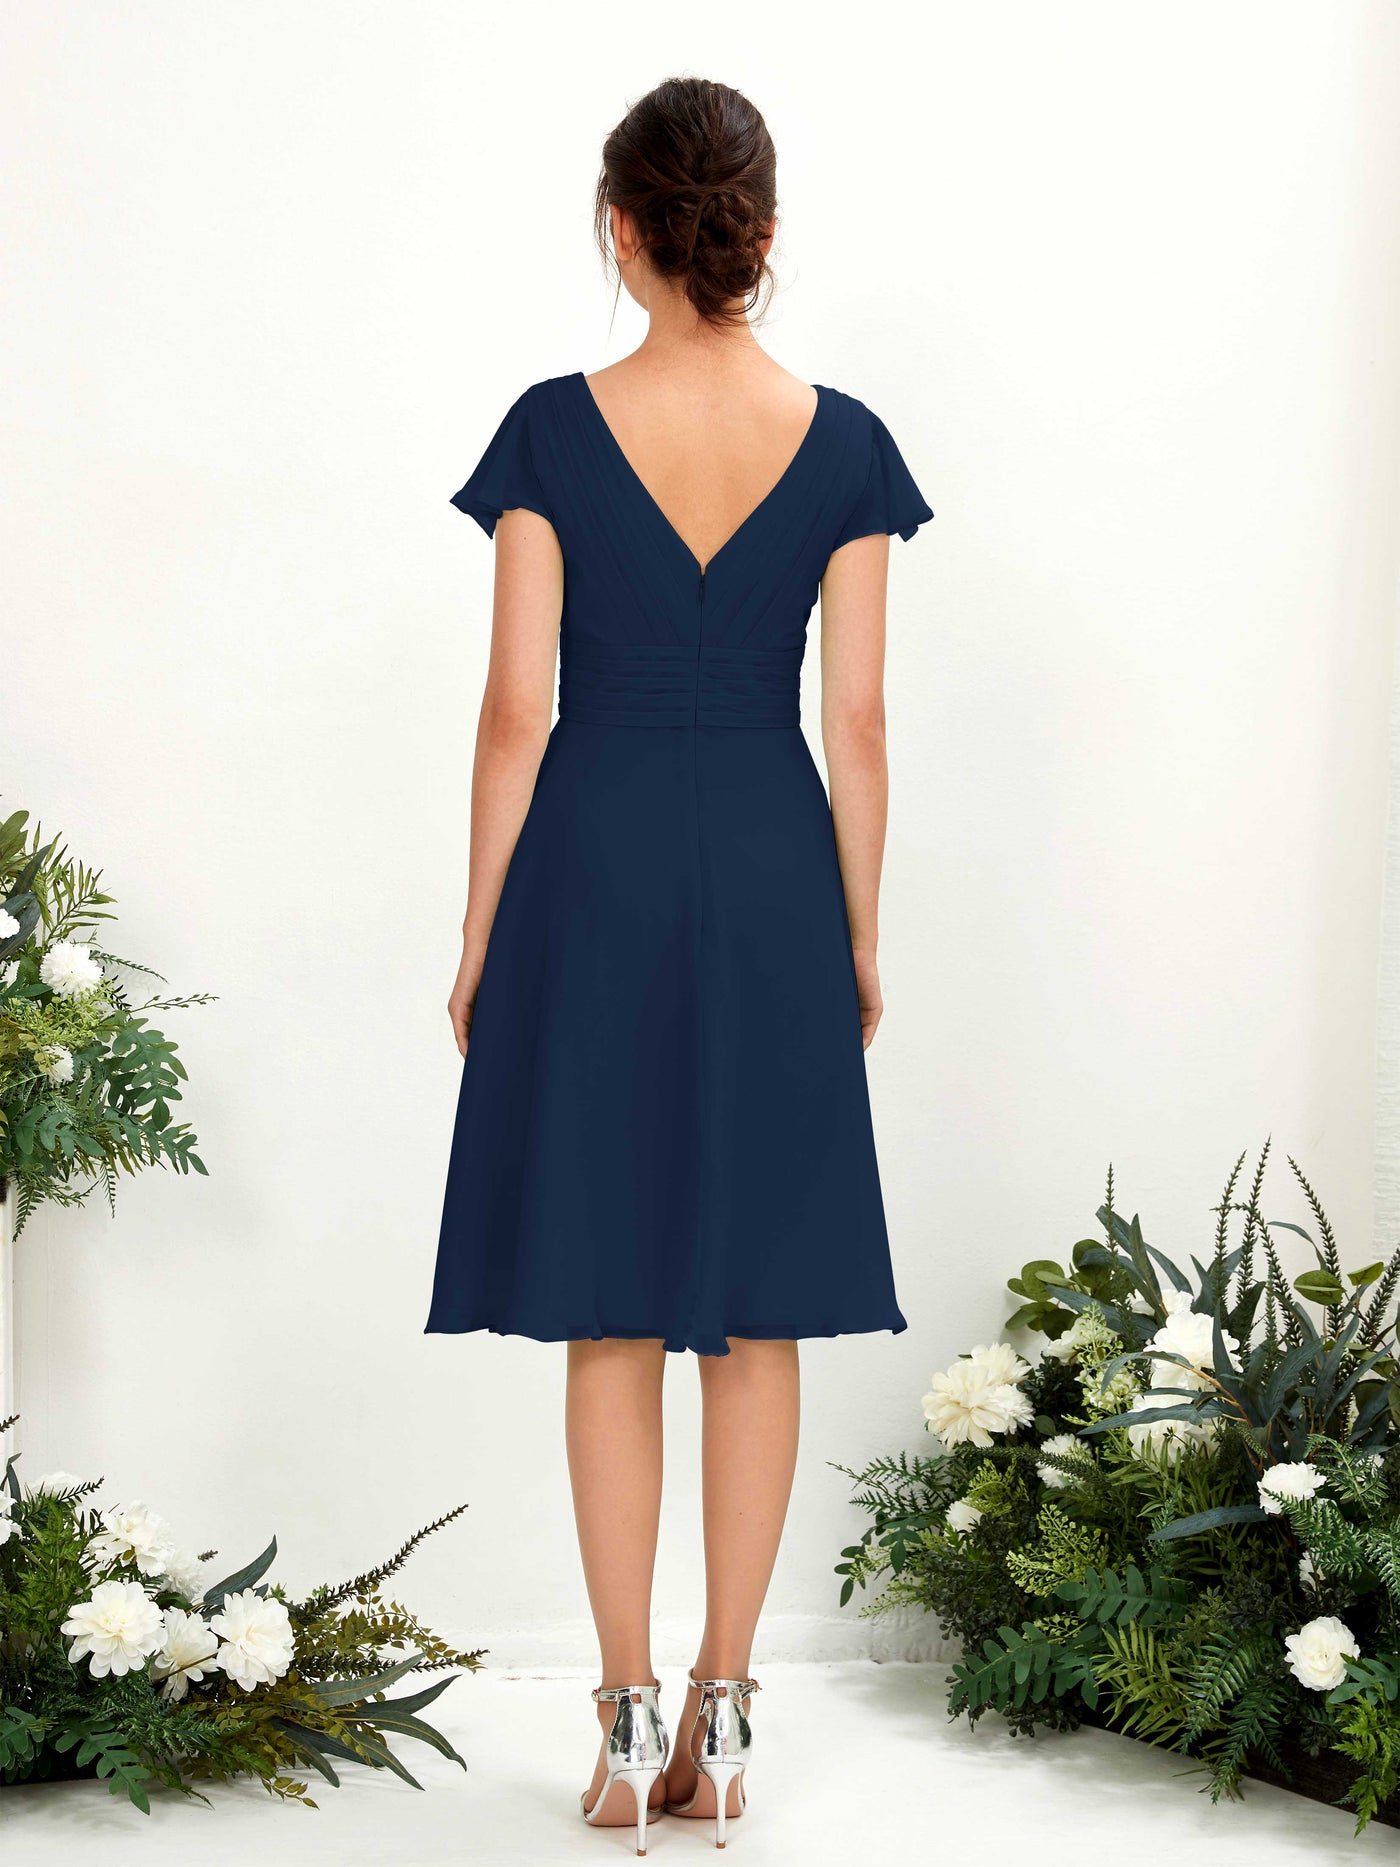 V-neck Short Sleeves Chiffon Bridesmaid Dress (81220213)#color_navy